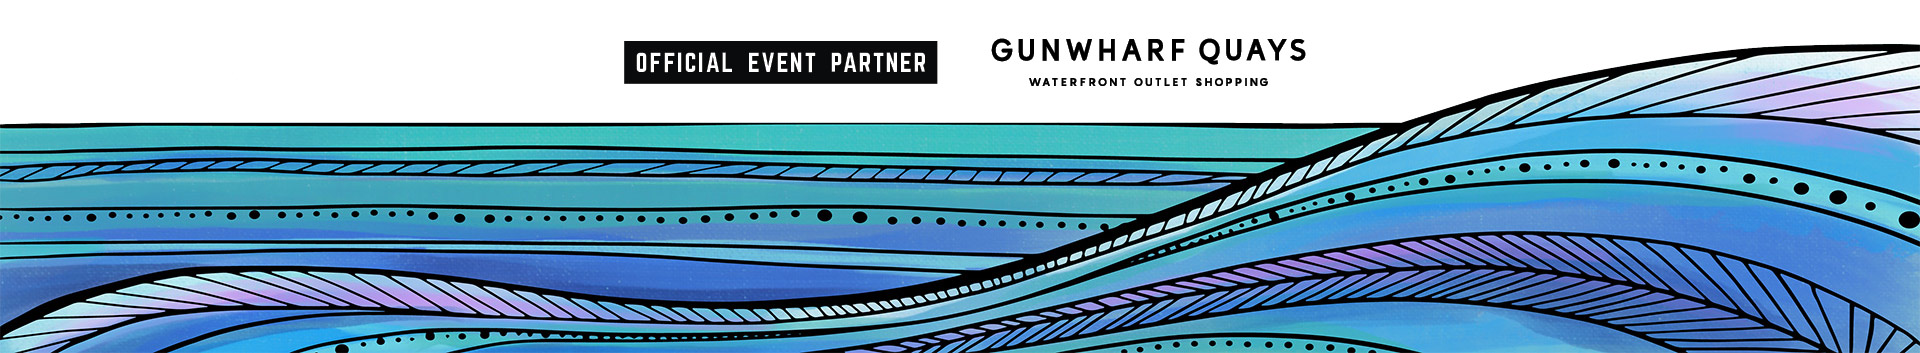 Official events partner gunwharf quays